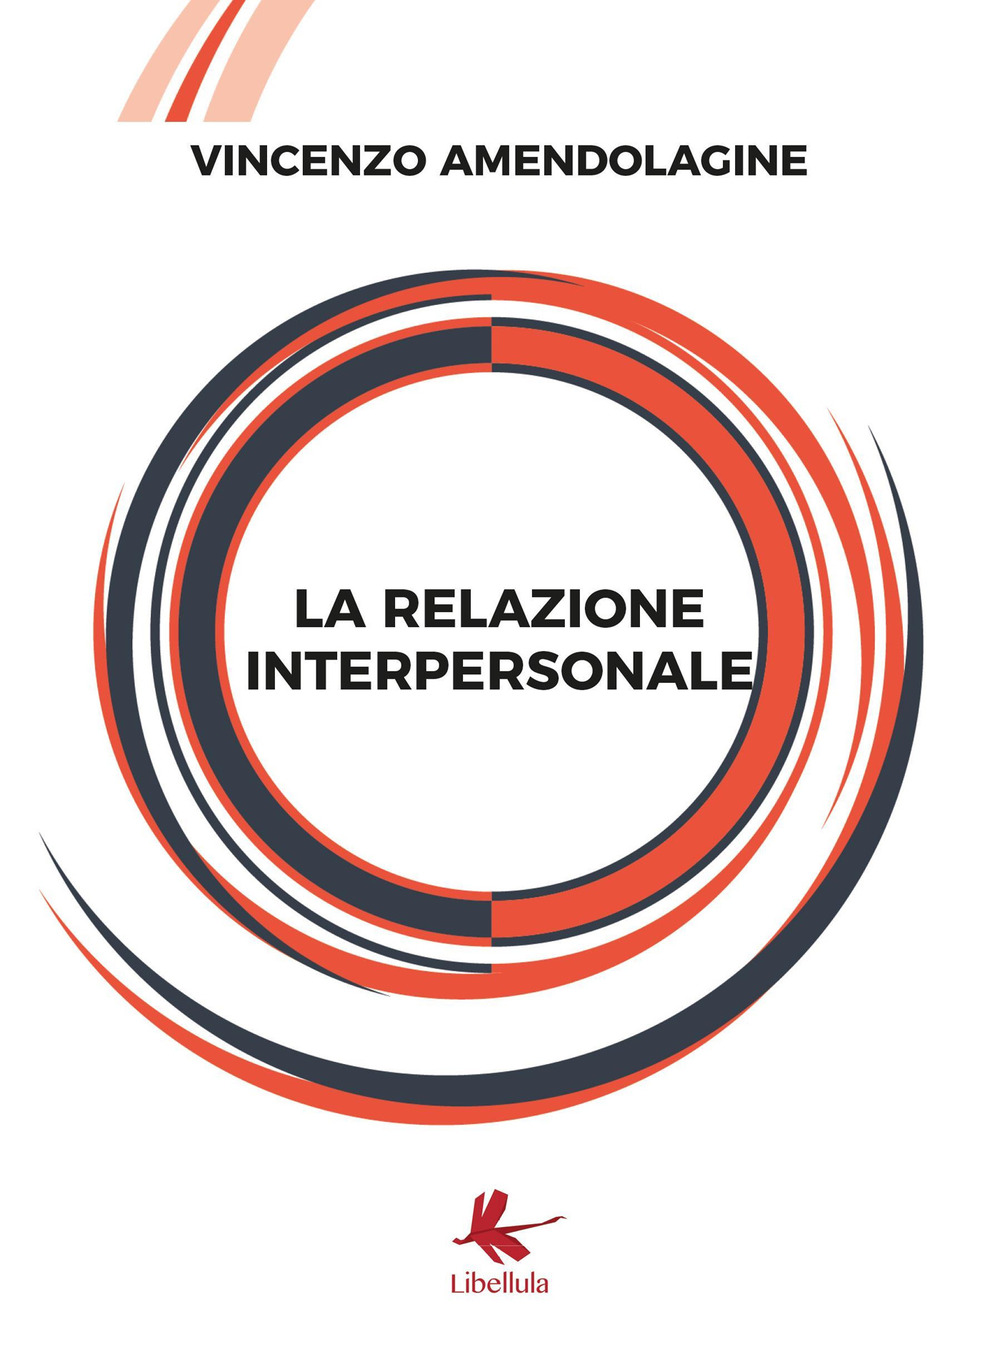 Image of La relazione interpersonale